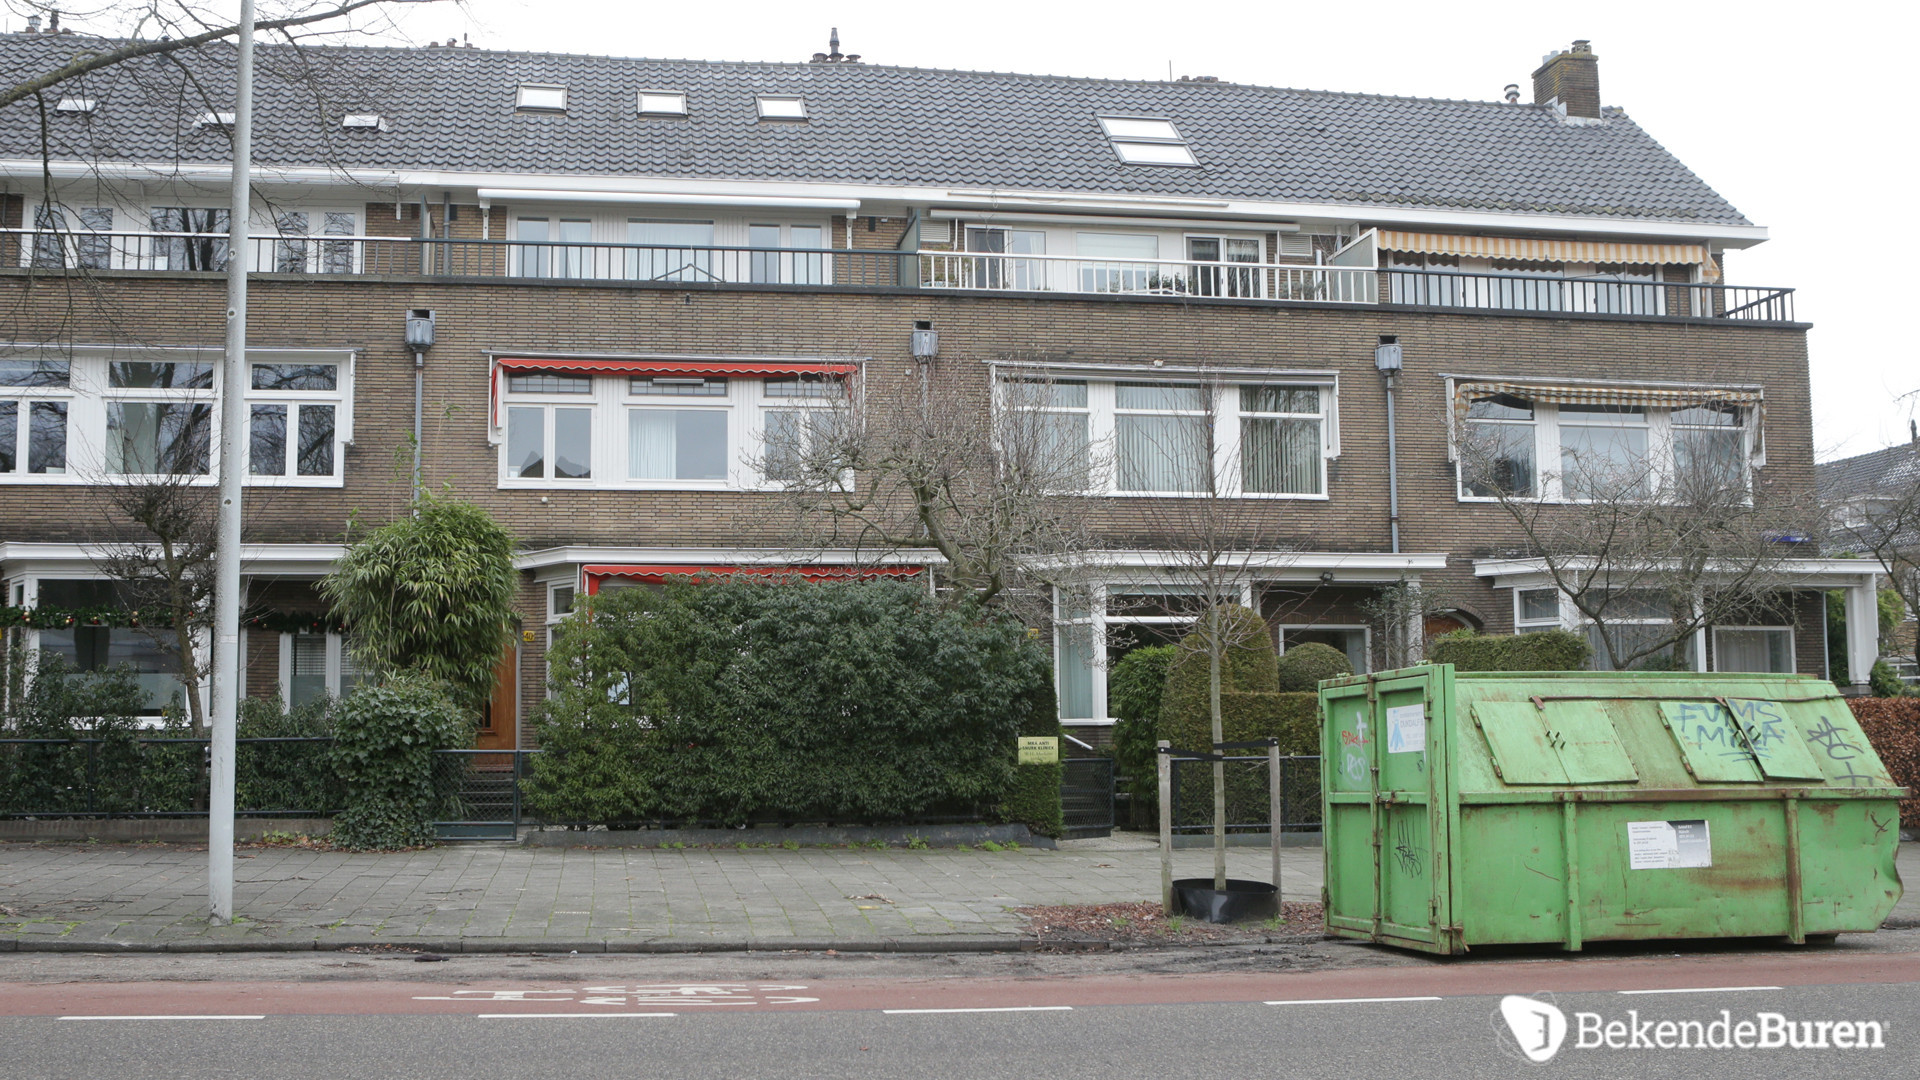 Martijn Krabbe verbouwt zijn woning zonder kijken. Zie fotos 6